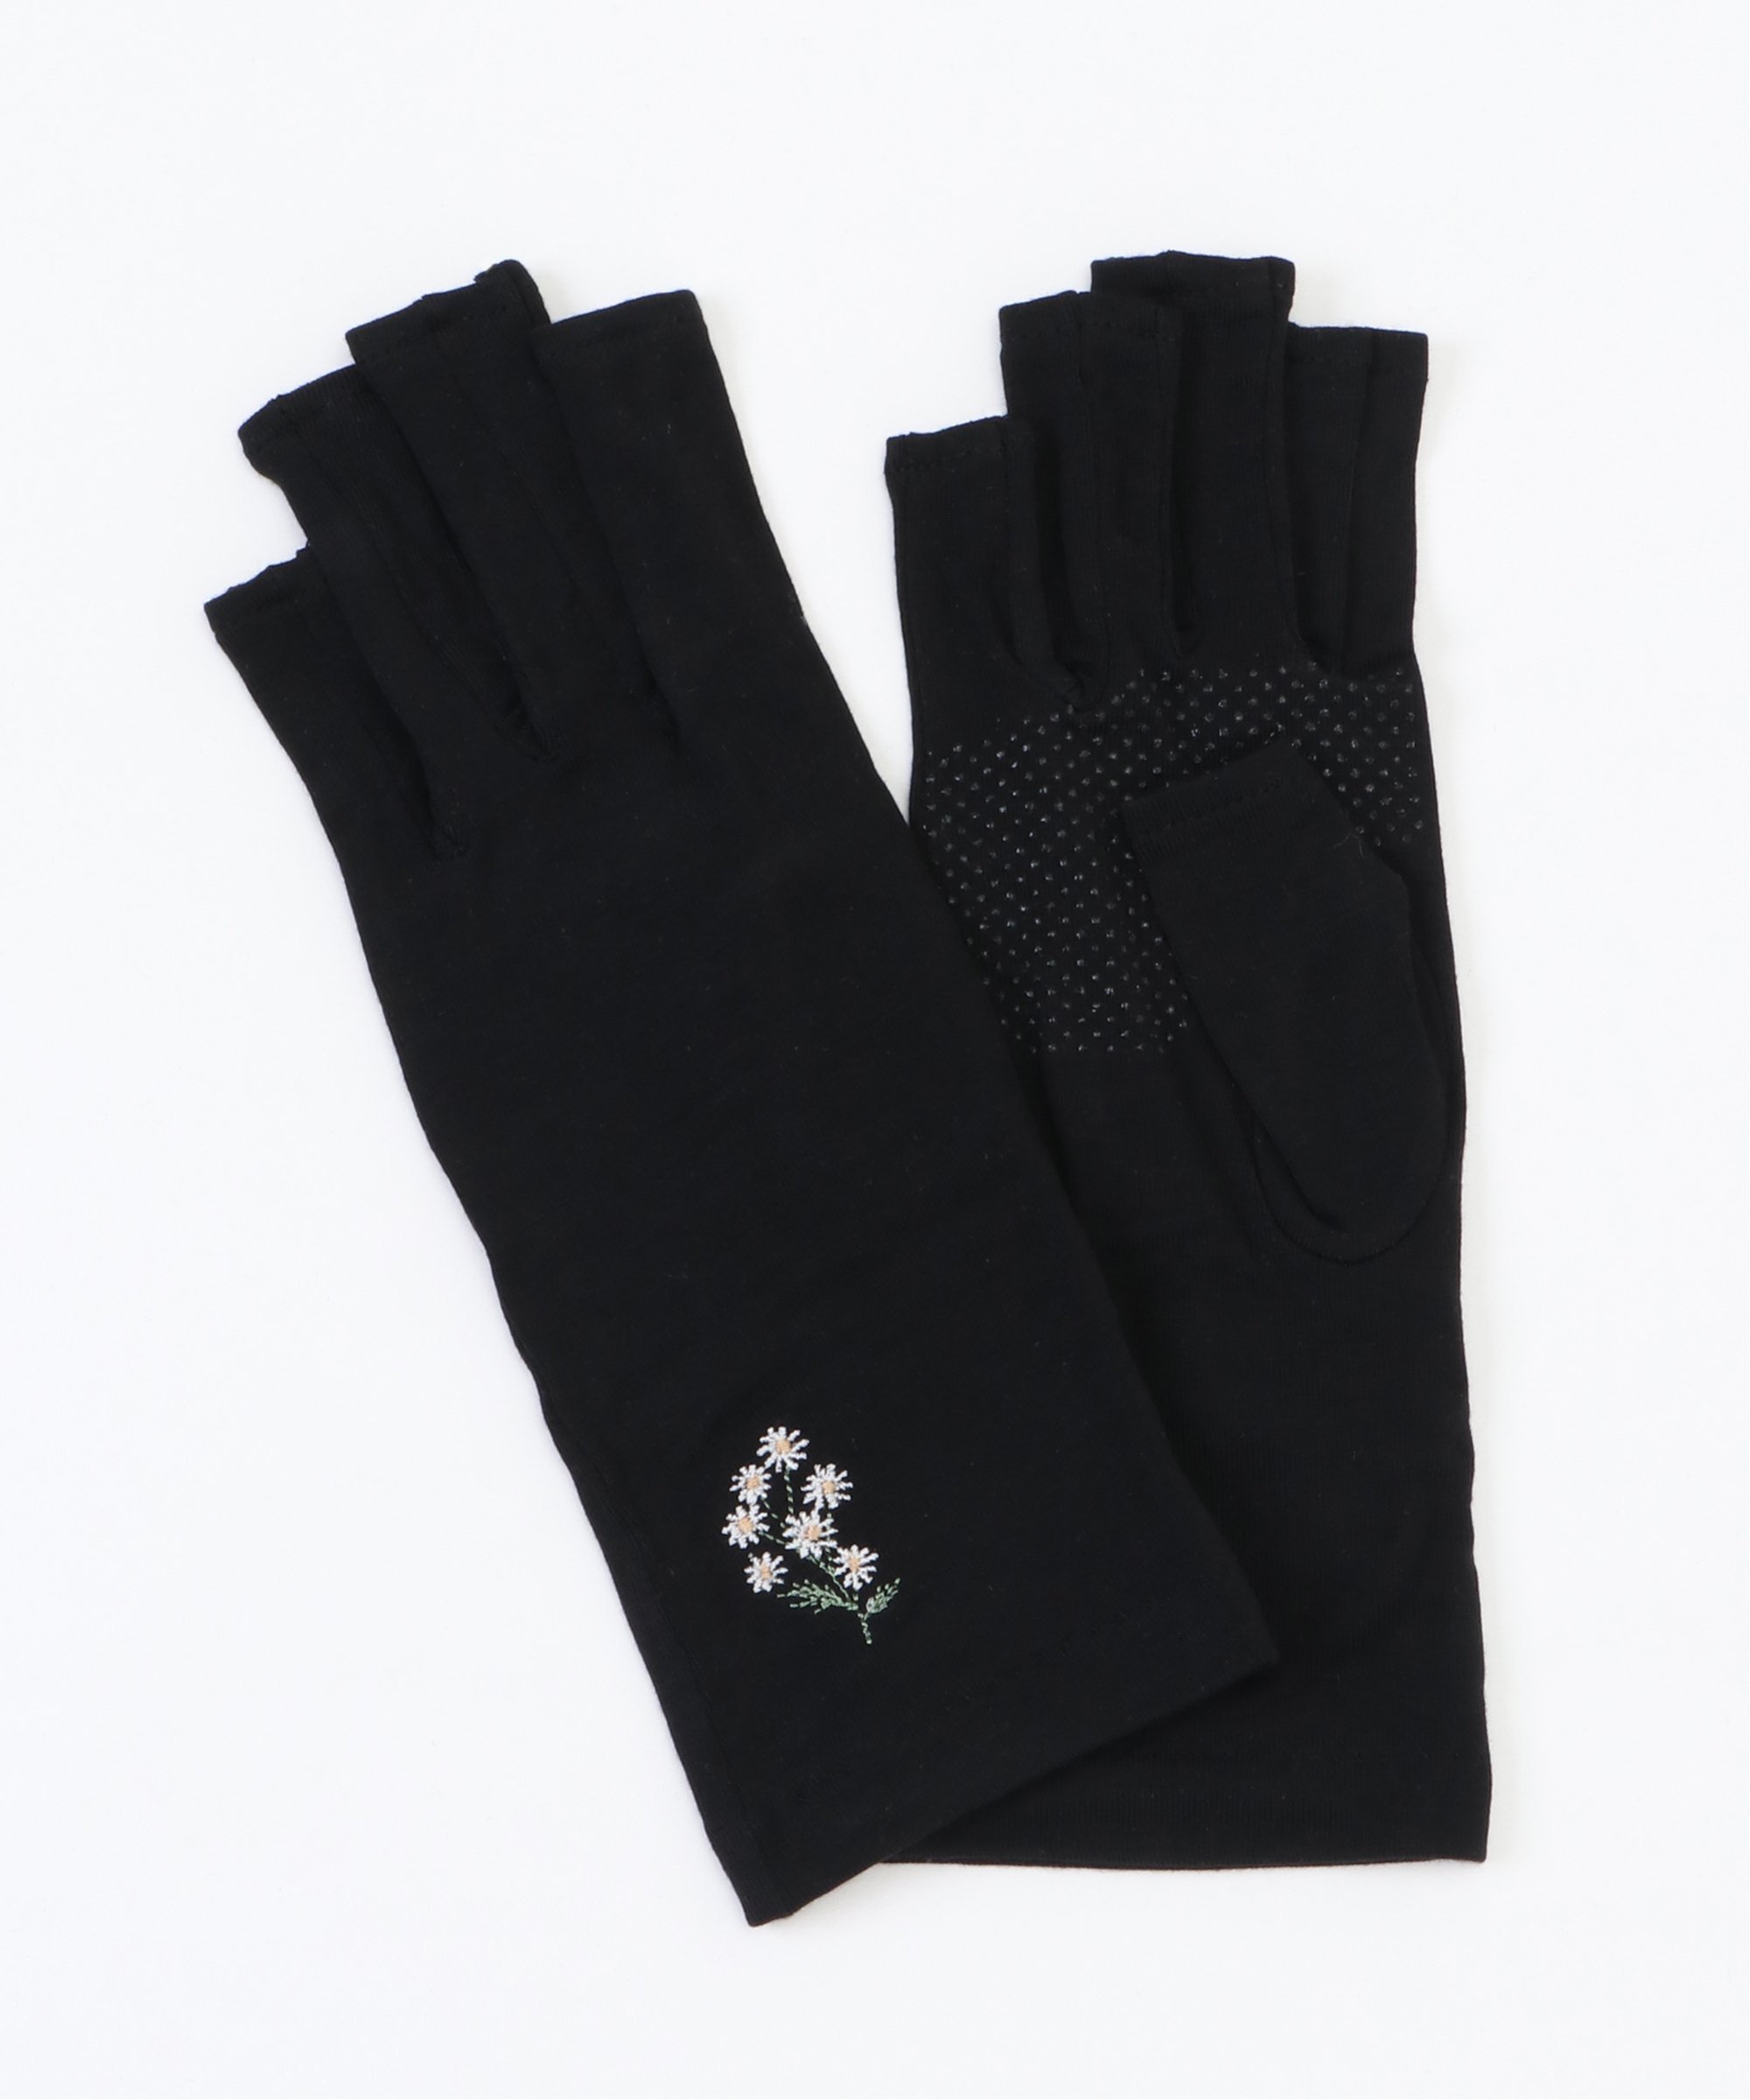 感謝価格 手袋 UVグローブ ショート 竹繊維刺繍1 529円